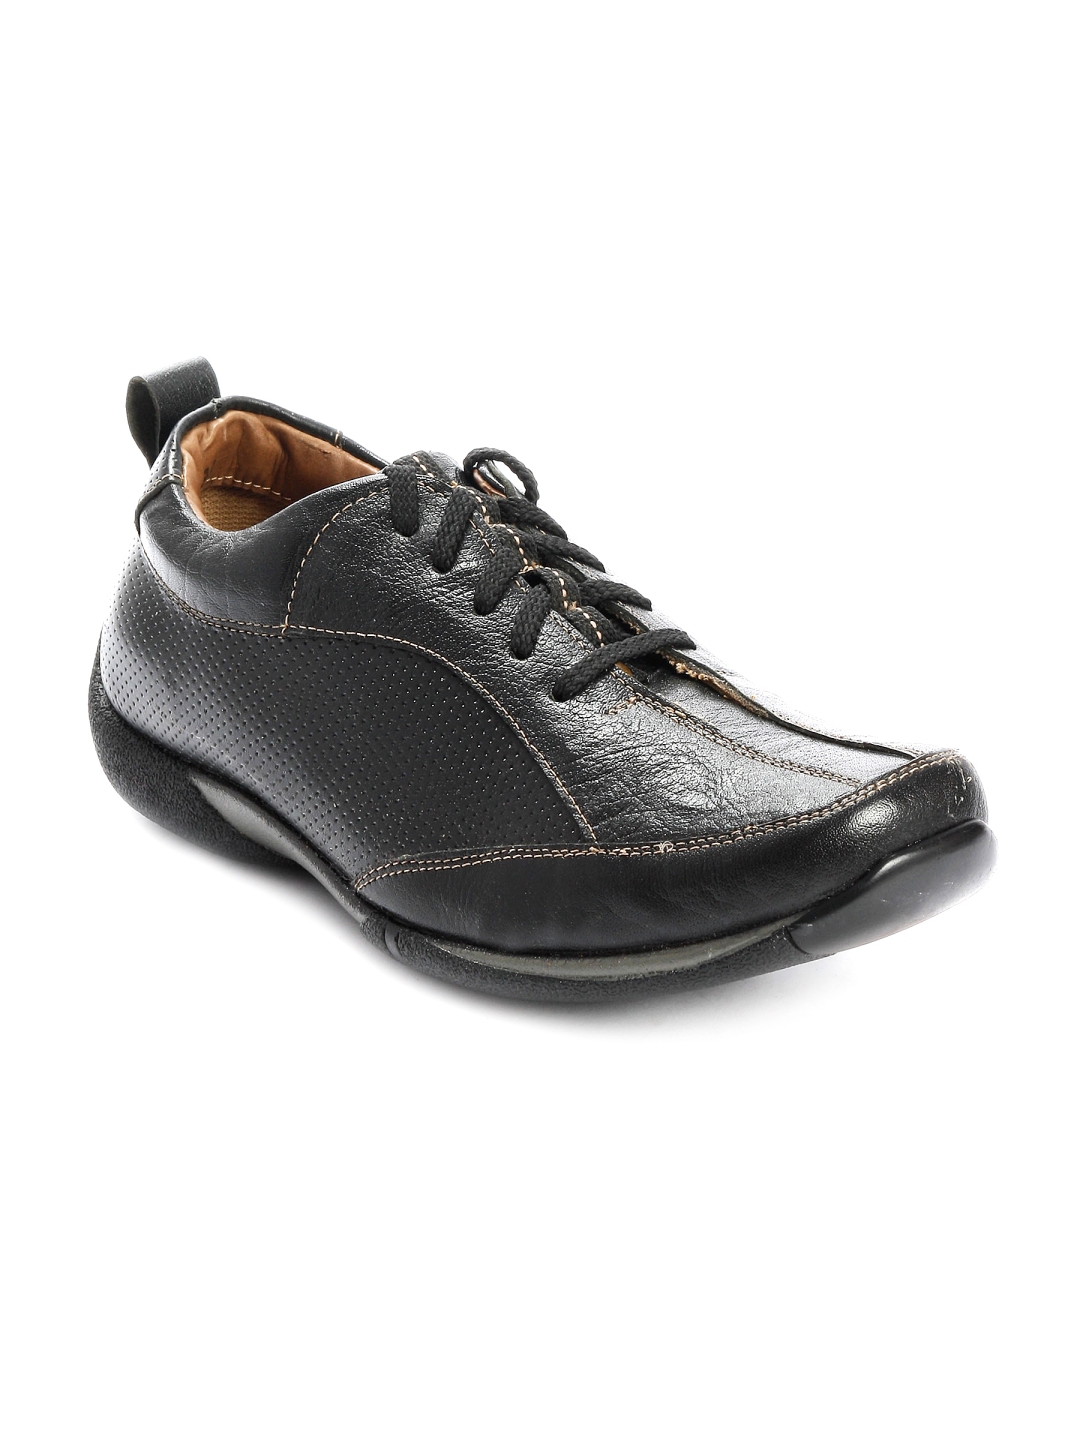 Buy Buckaroo Men Nuevo Black Casual Shoe - Casual Shoes for Men 17767 ...